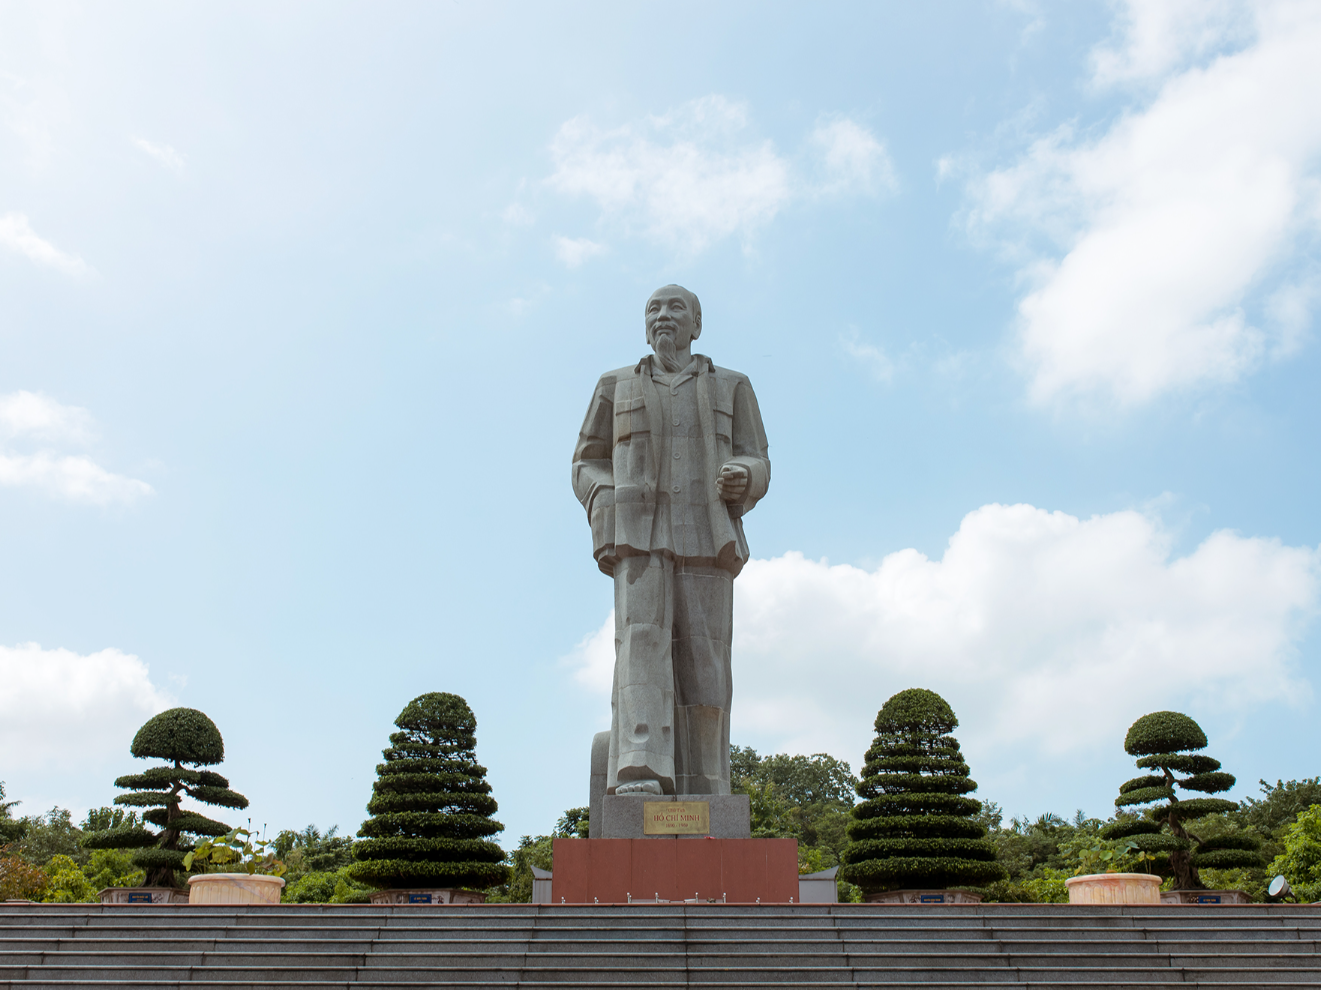 Quảng trường Hồ Chí Minh và Tượng đài Bác Hồ, TP. Vinh